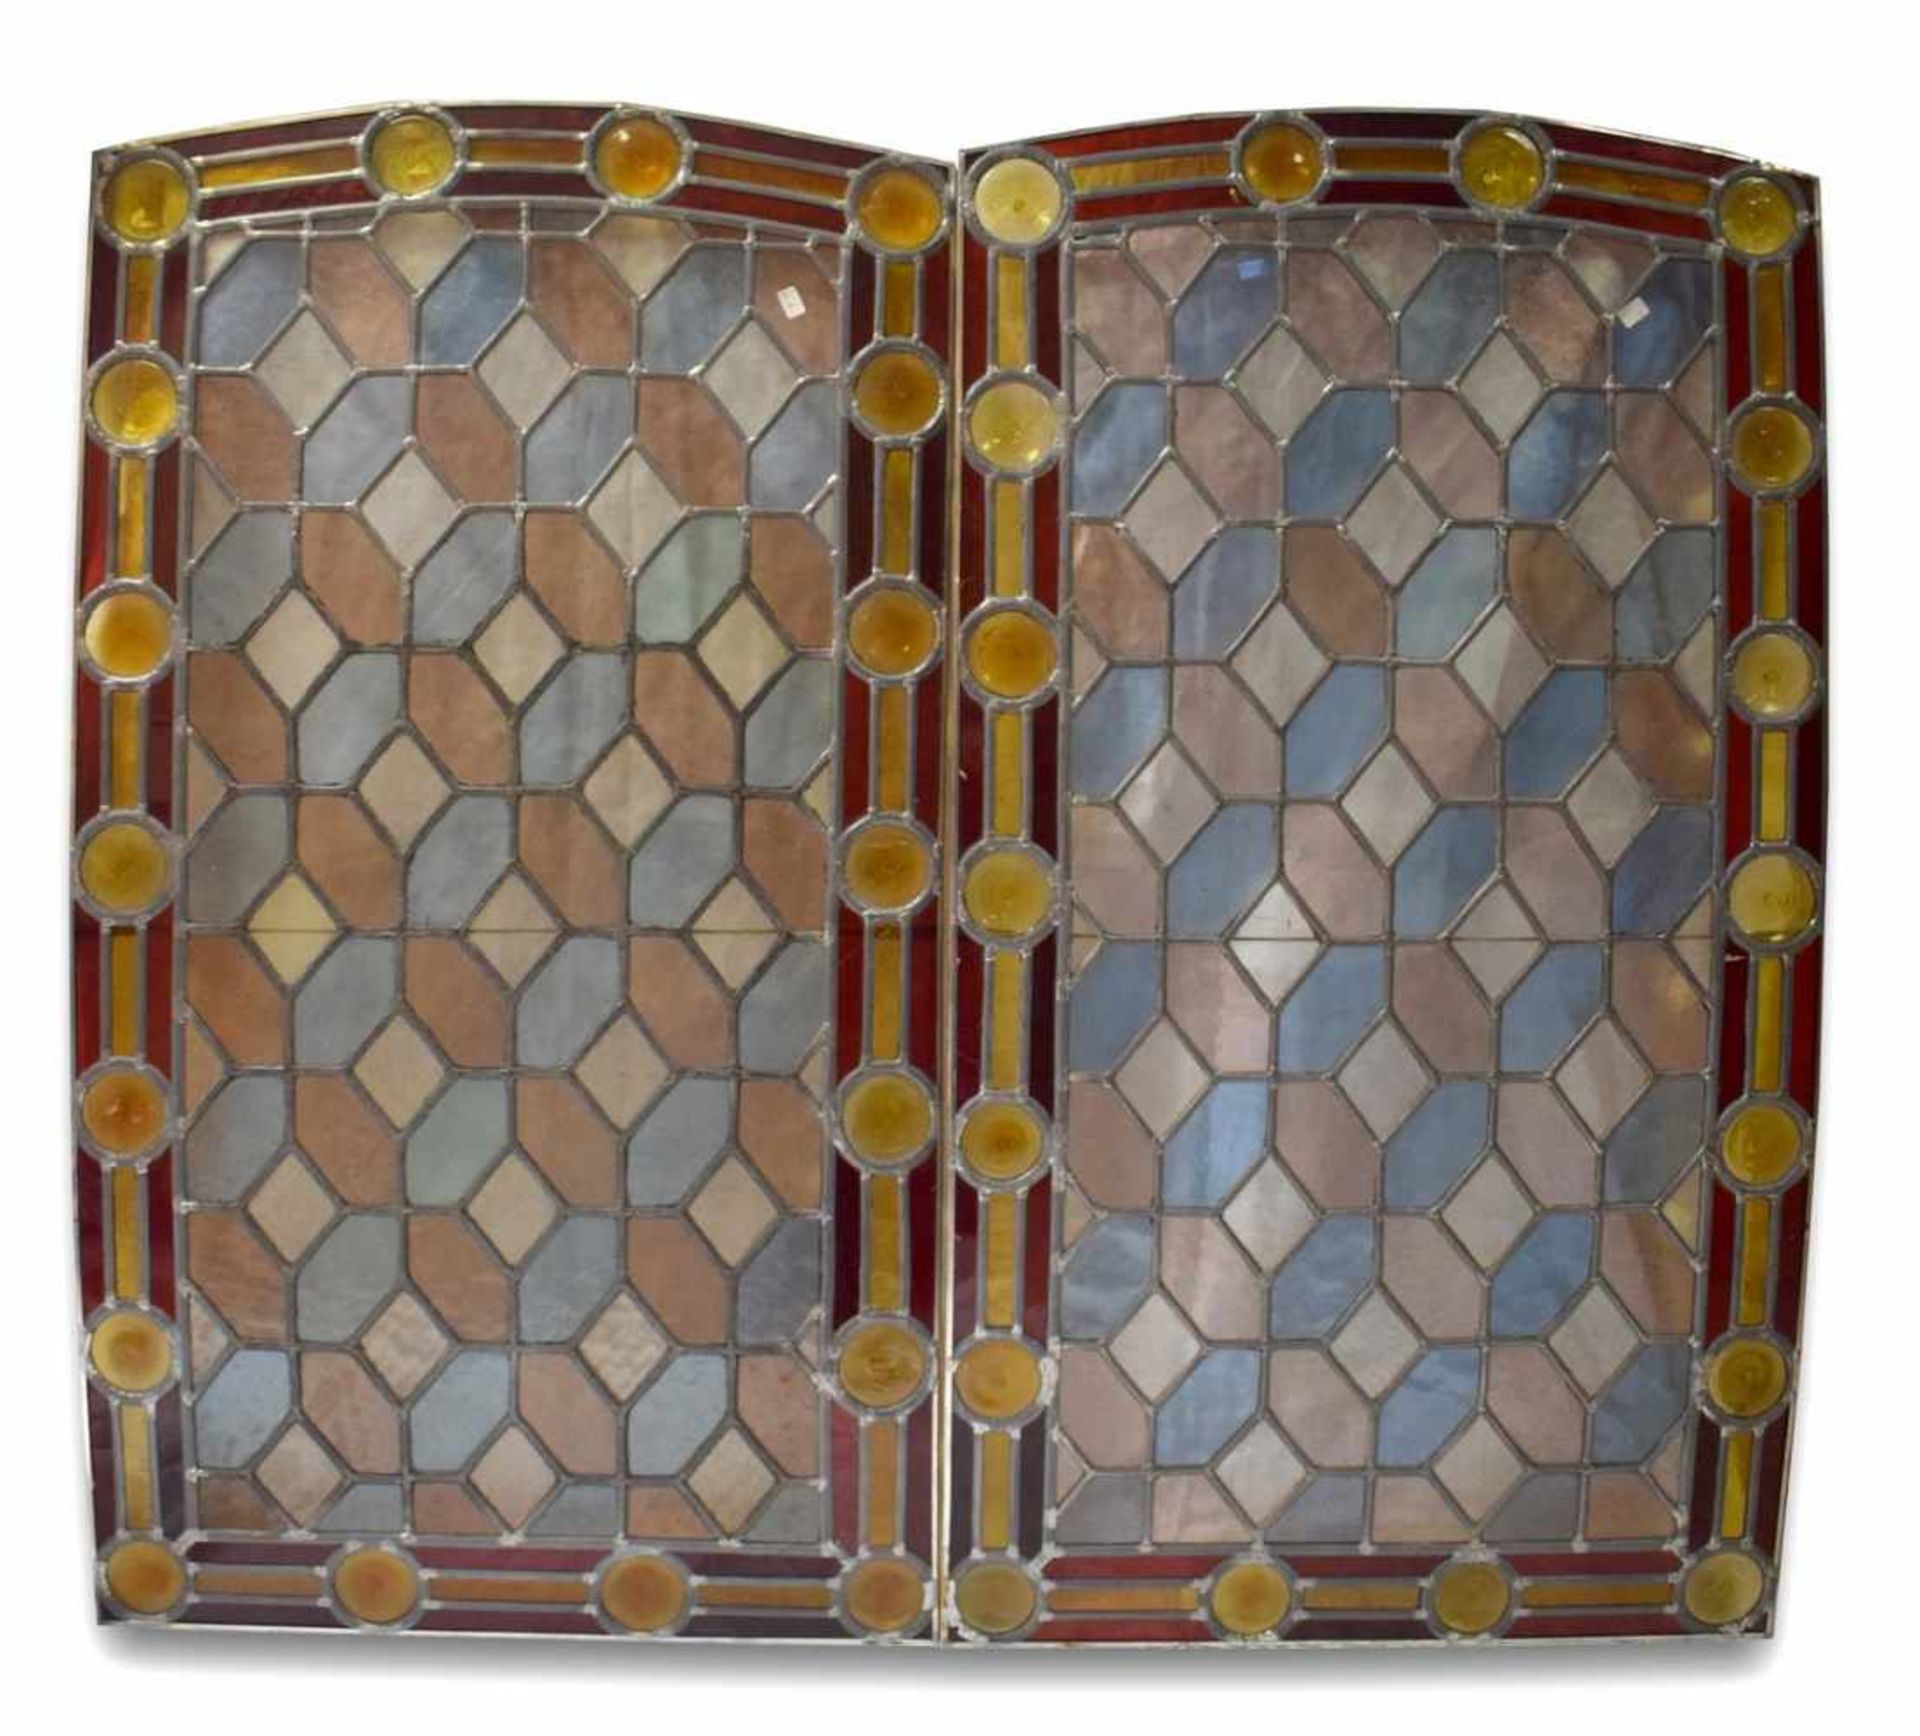 Zwei Bleiverglasungenrechteckig, mit bunten runden Scheiben, H 96 cm, B 54 cm, um 1900